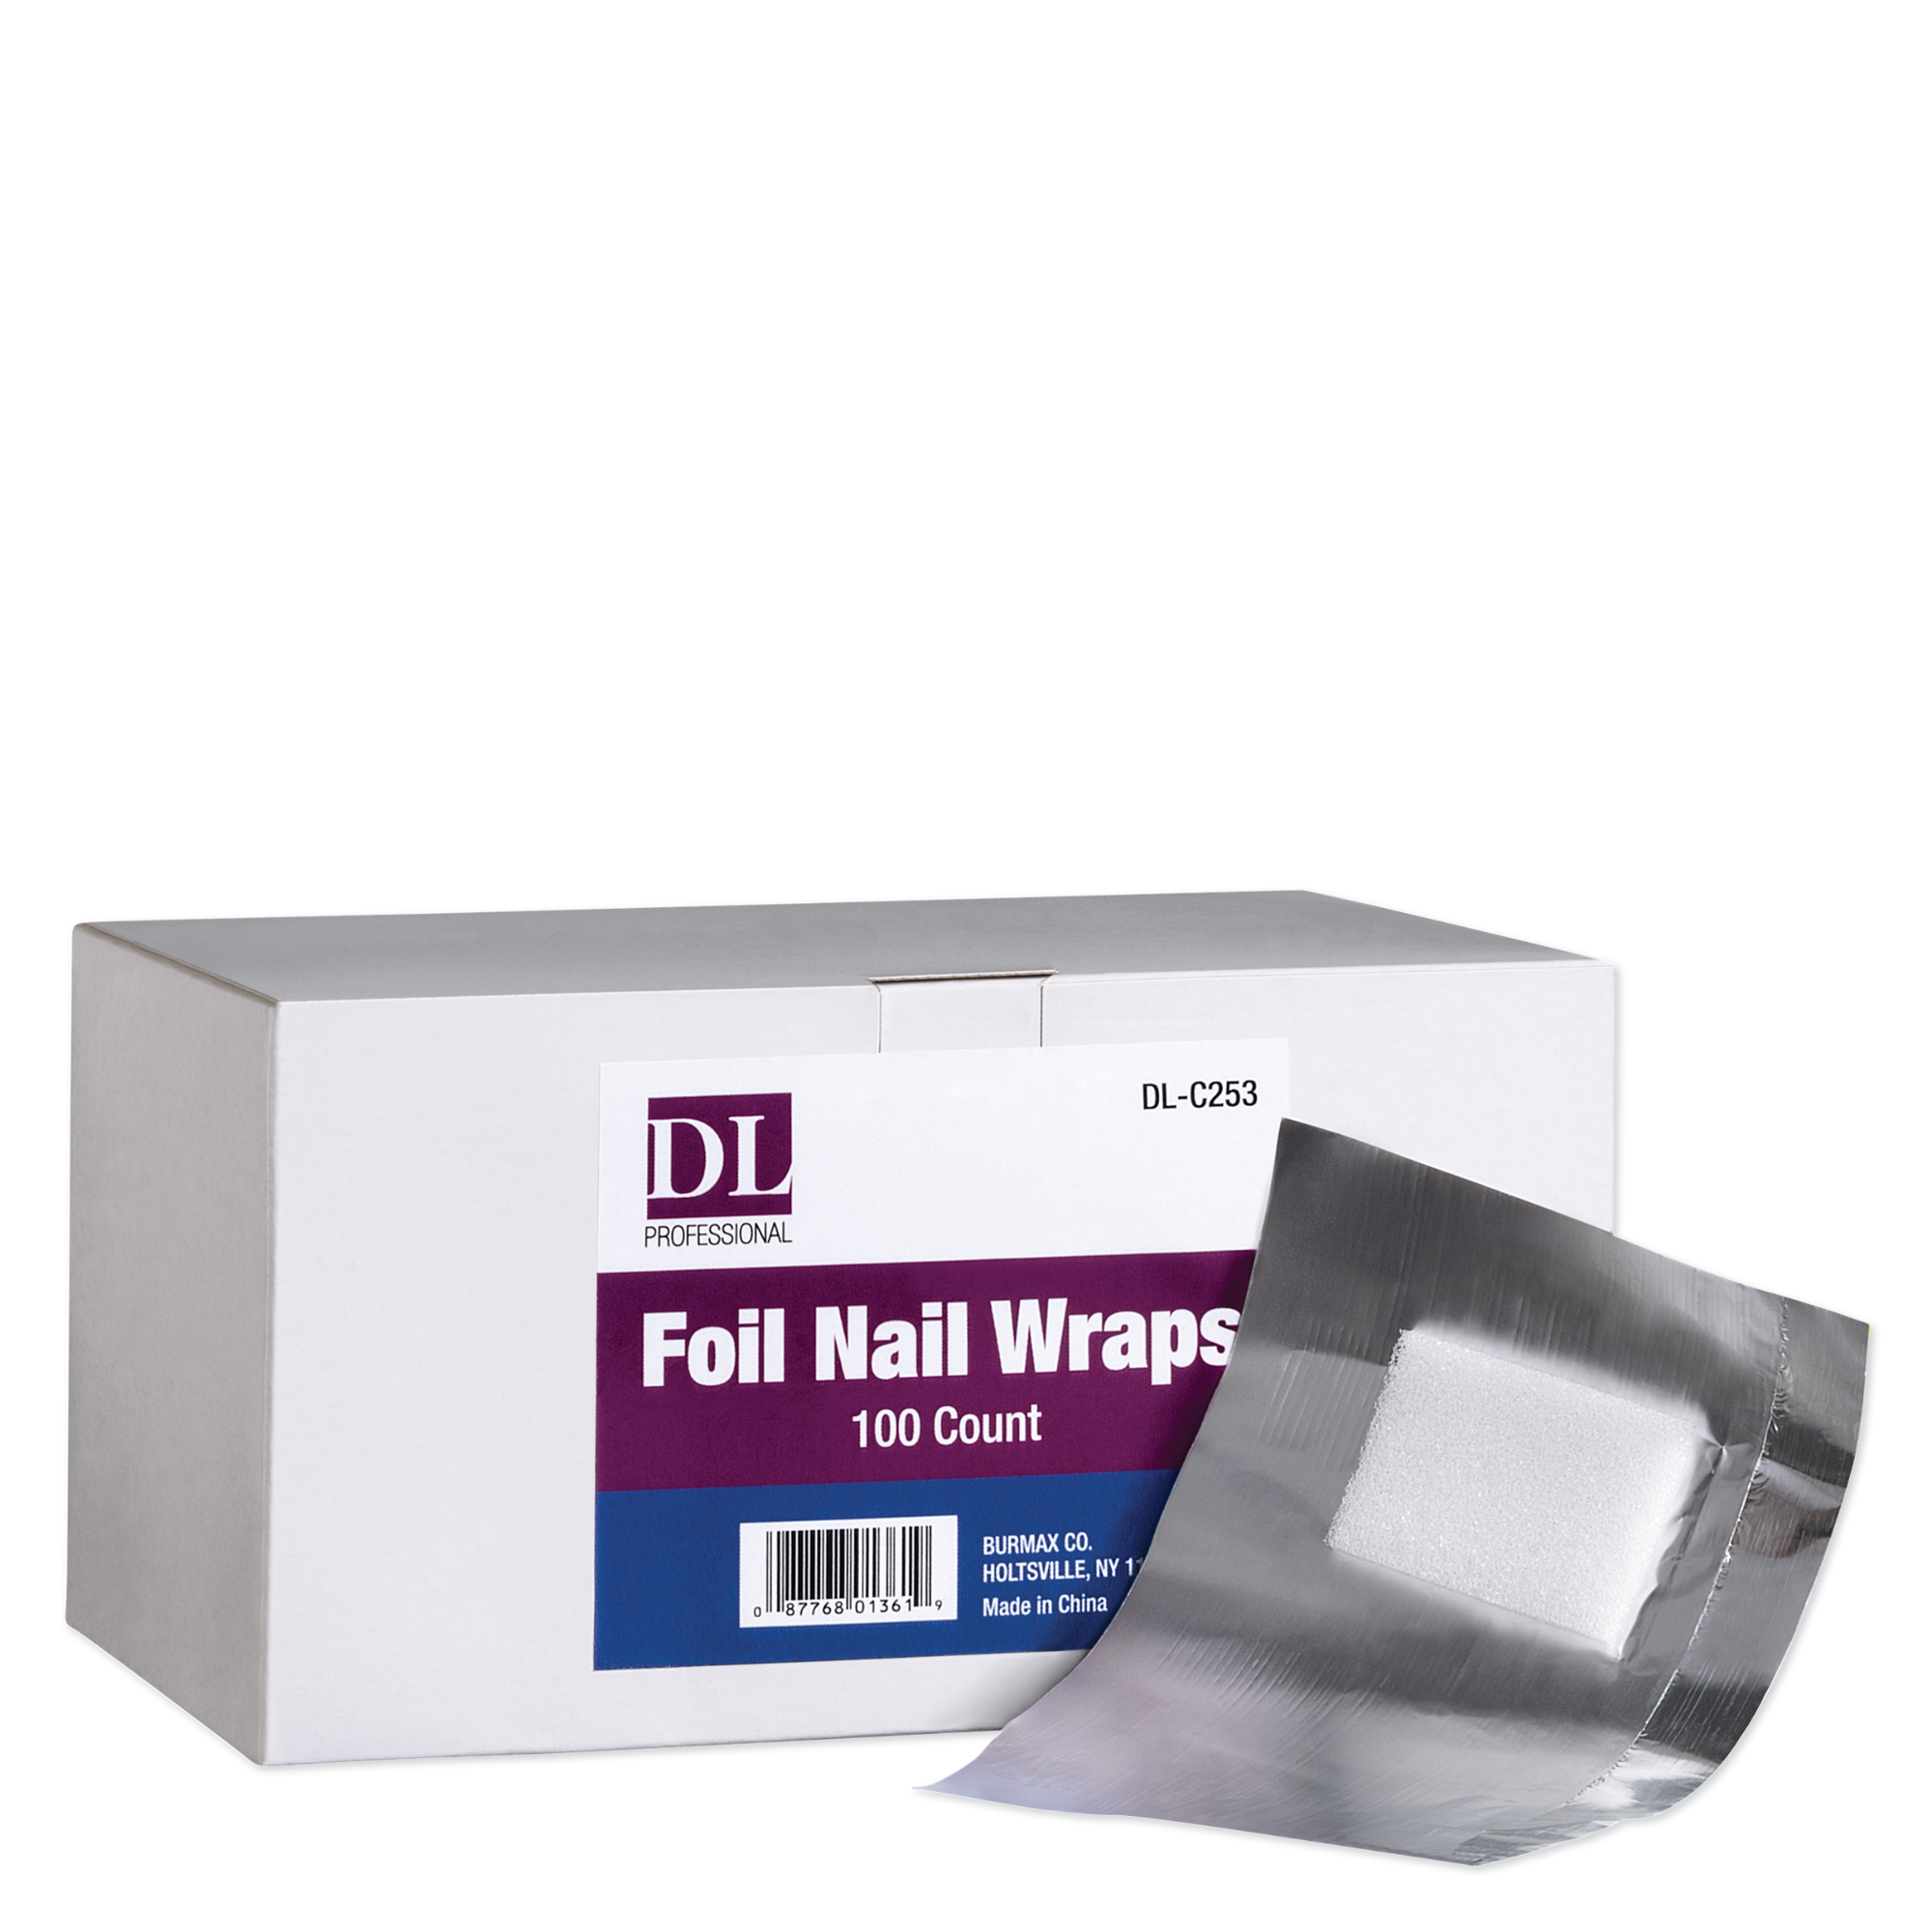 Foil Nail Wraps - 100/box